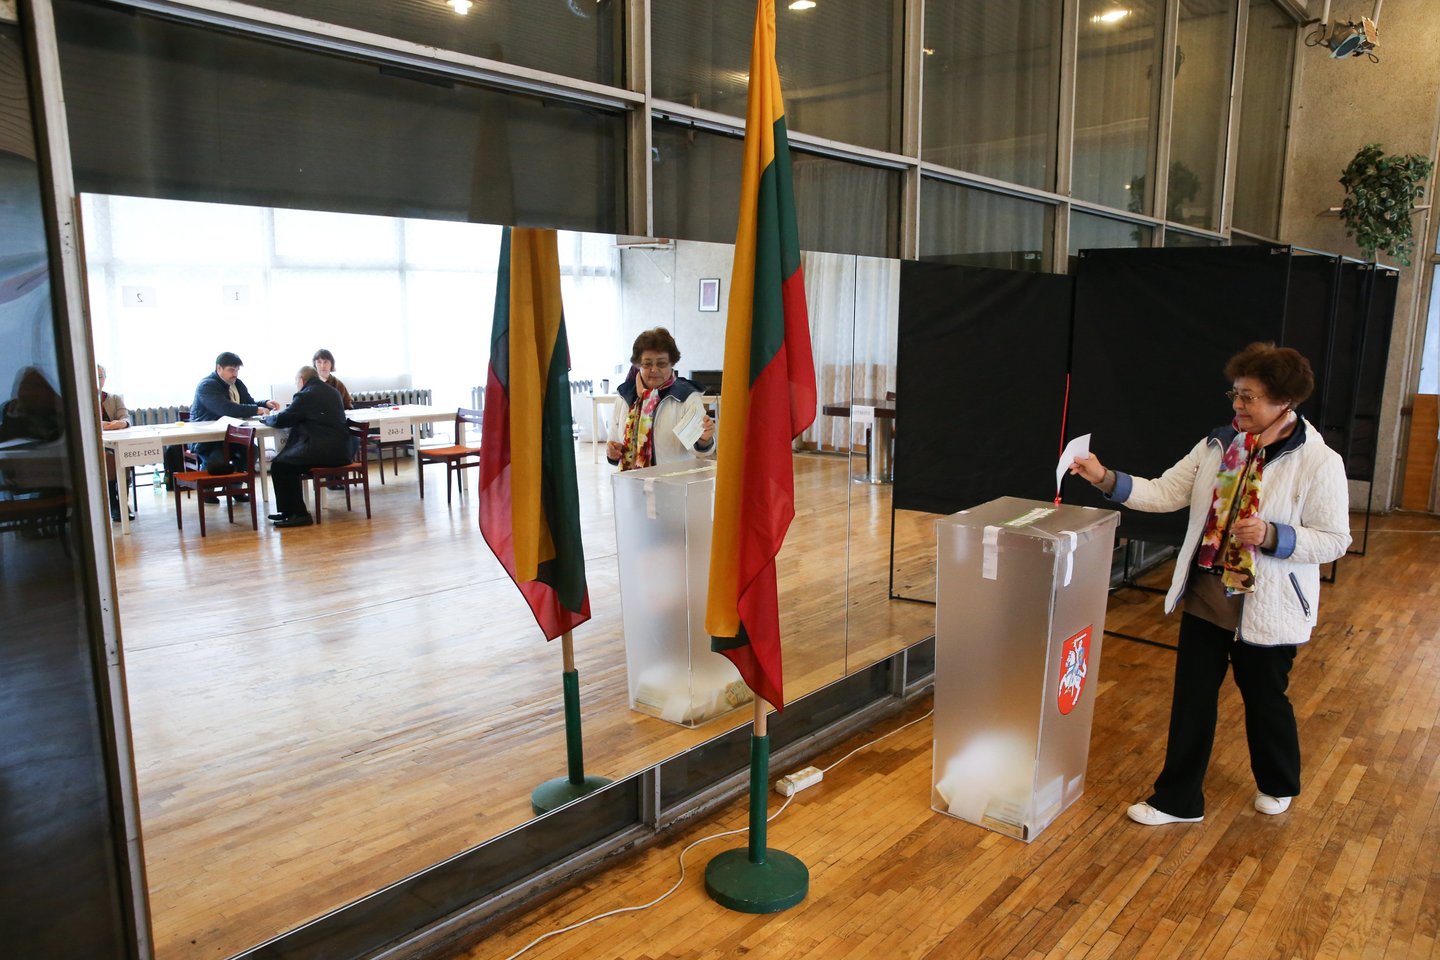 rinkimai, balsavimas, balsadėžės<br>R.Danisevičiaus nuotr.